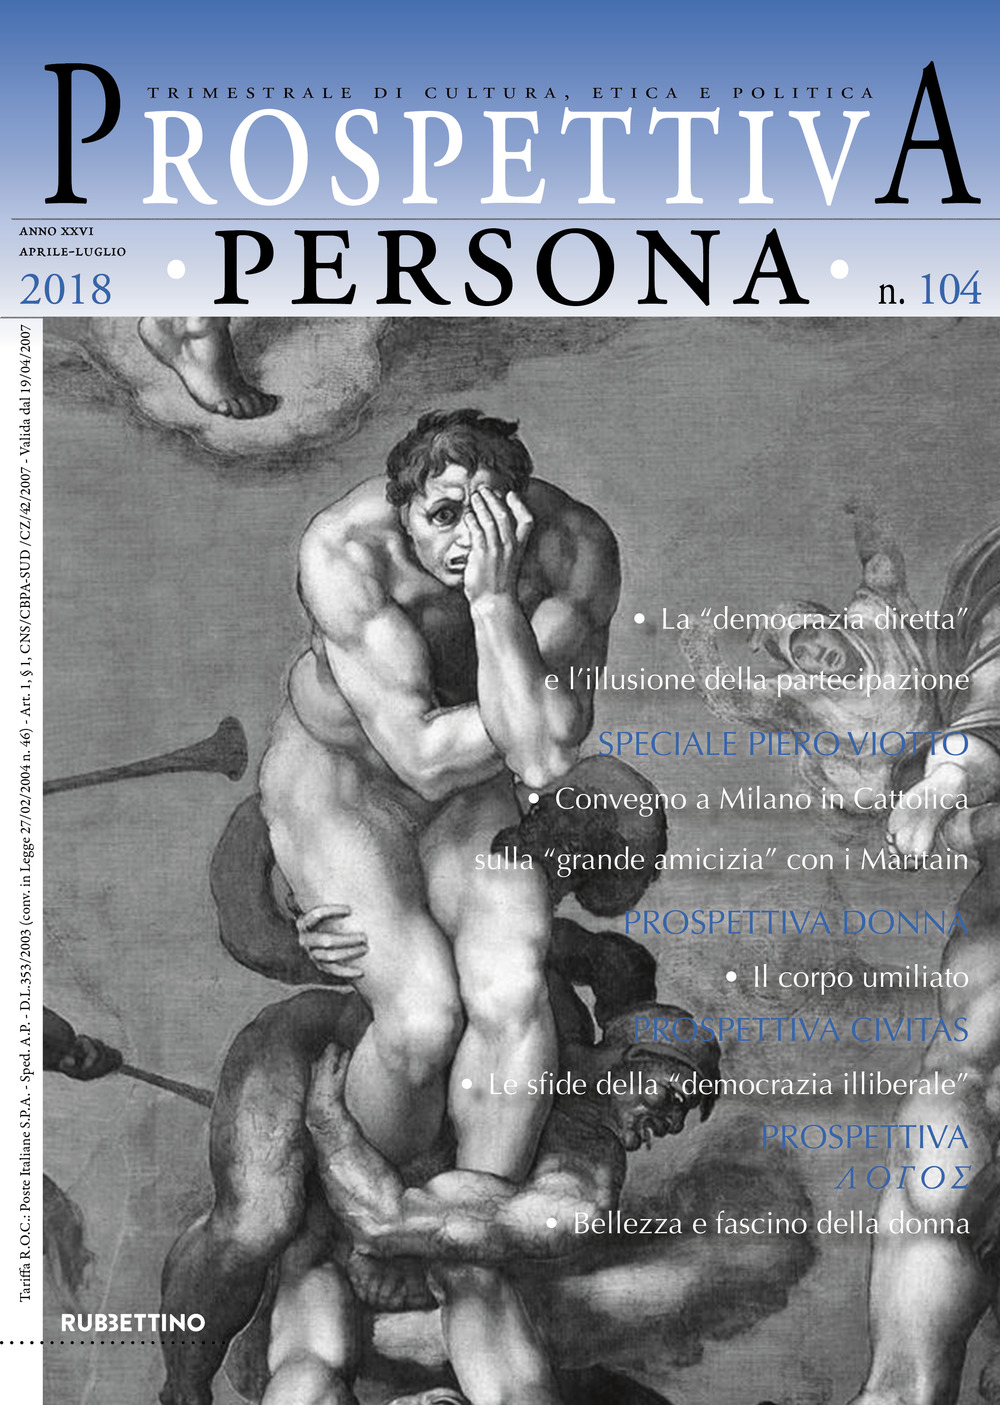 Image of Prospettiva persona. Trimestrale di cultura, etica e politica (2018). Vol. 104: Aprile-luglio.